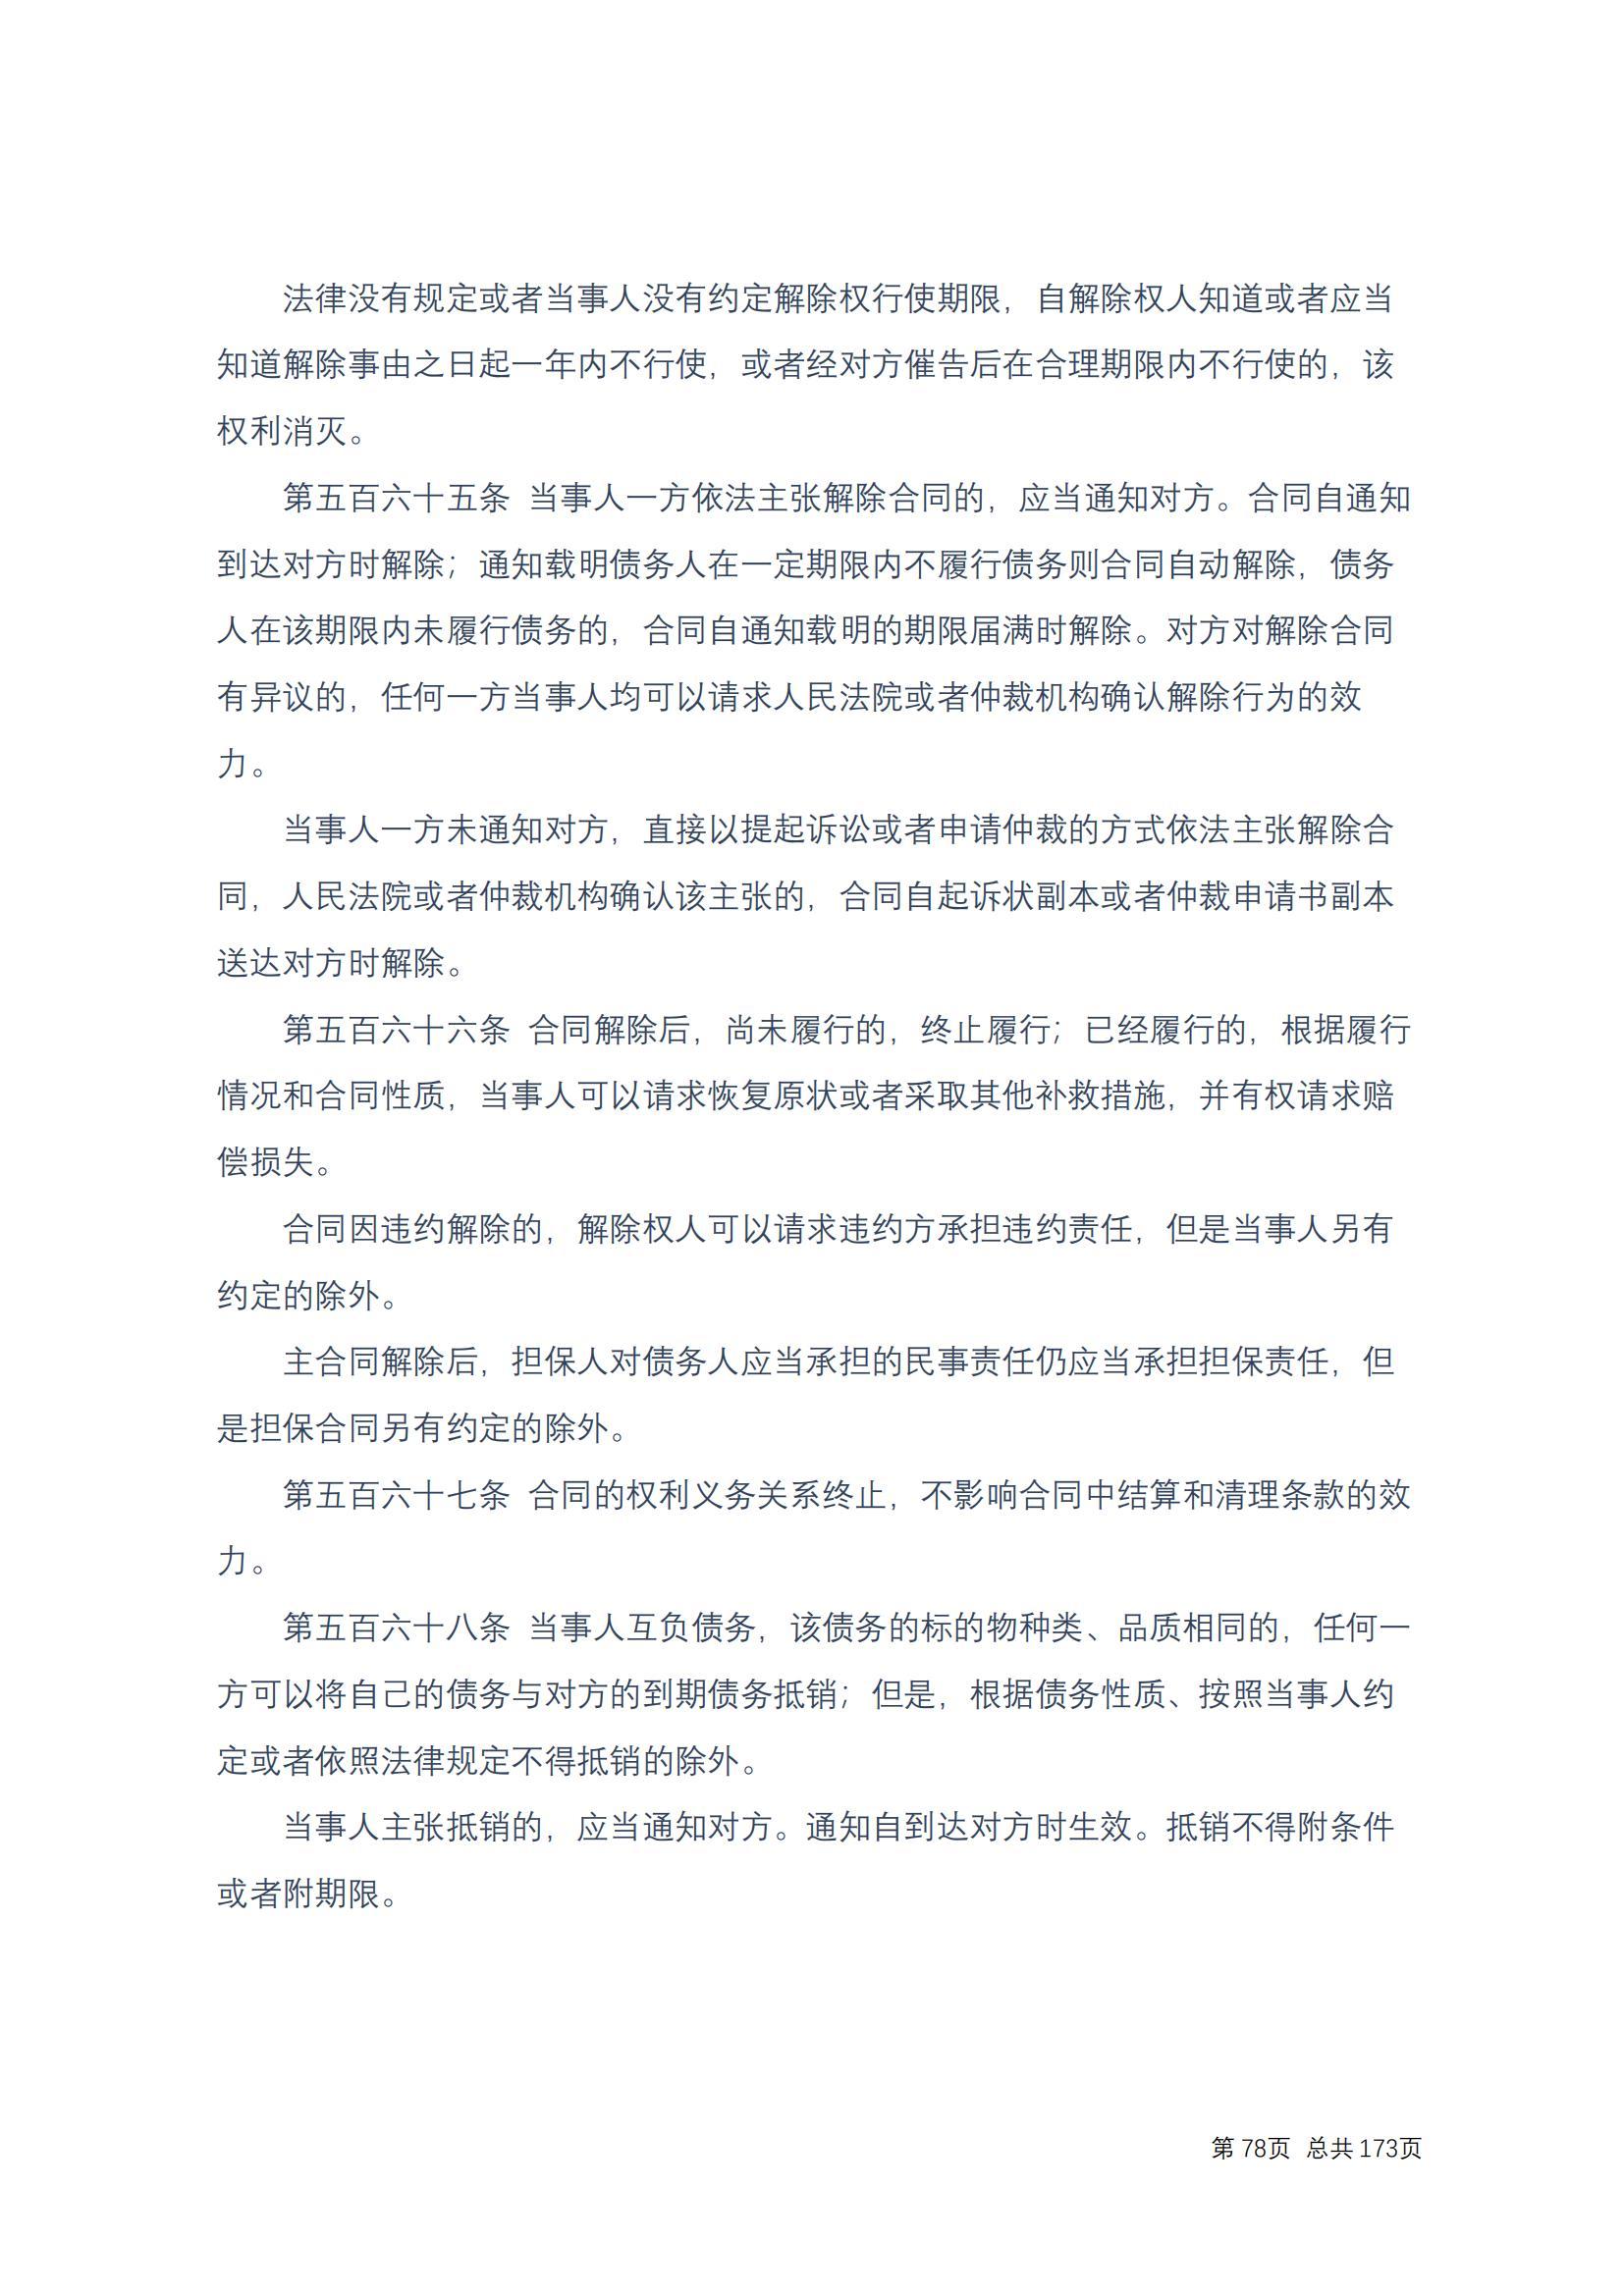 中华人民共和国民法典 修改过_77